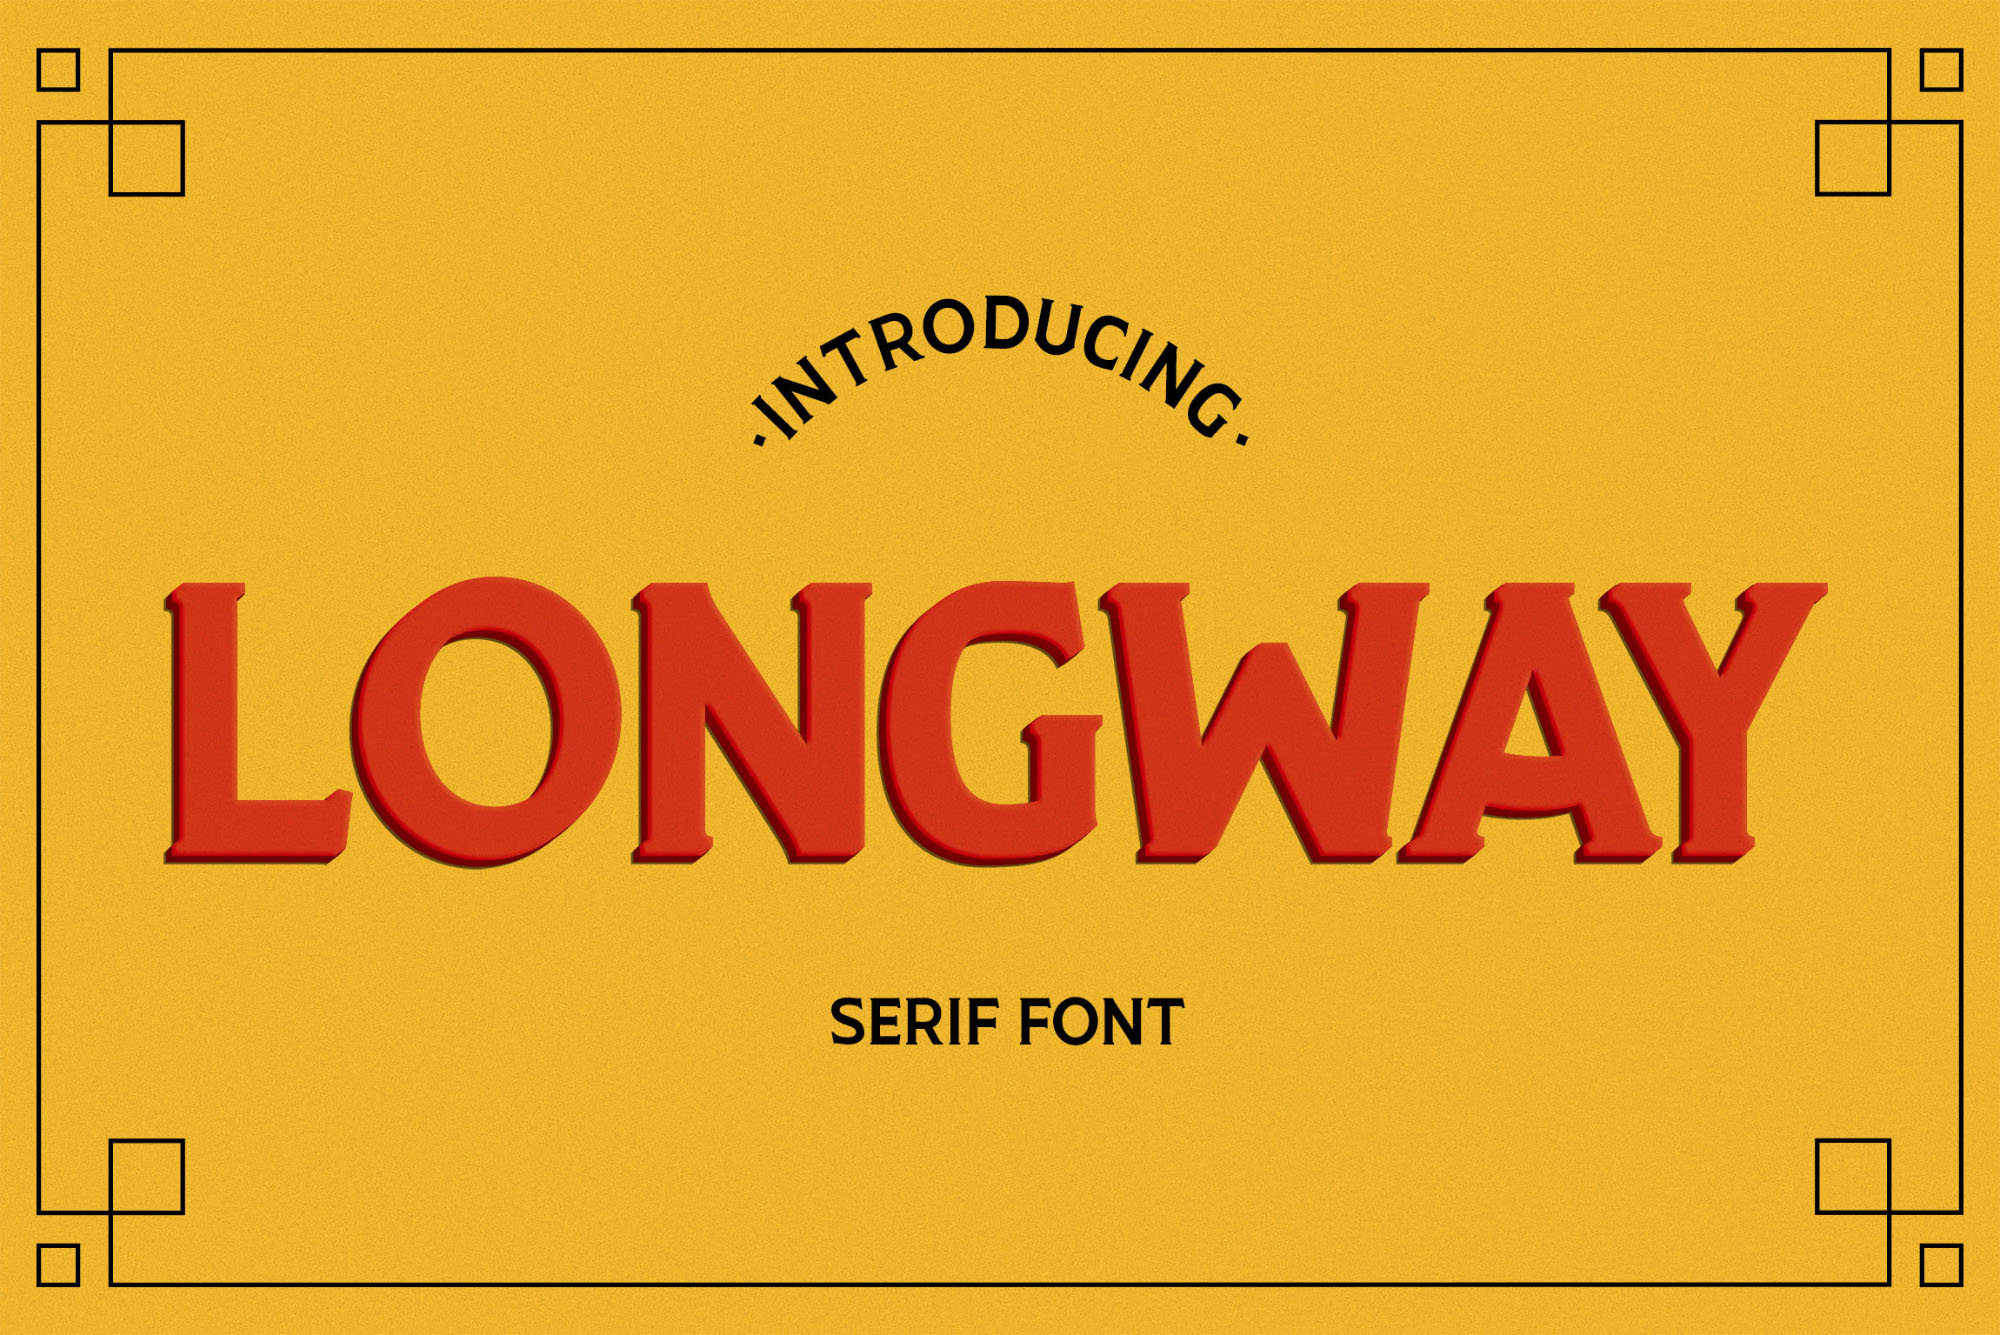 品牌设计专属全大写英文衬线字体 Longway Serif Typeface插图